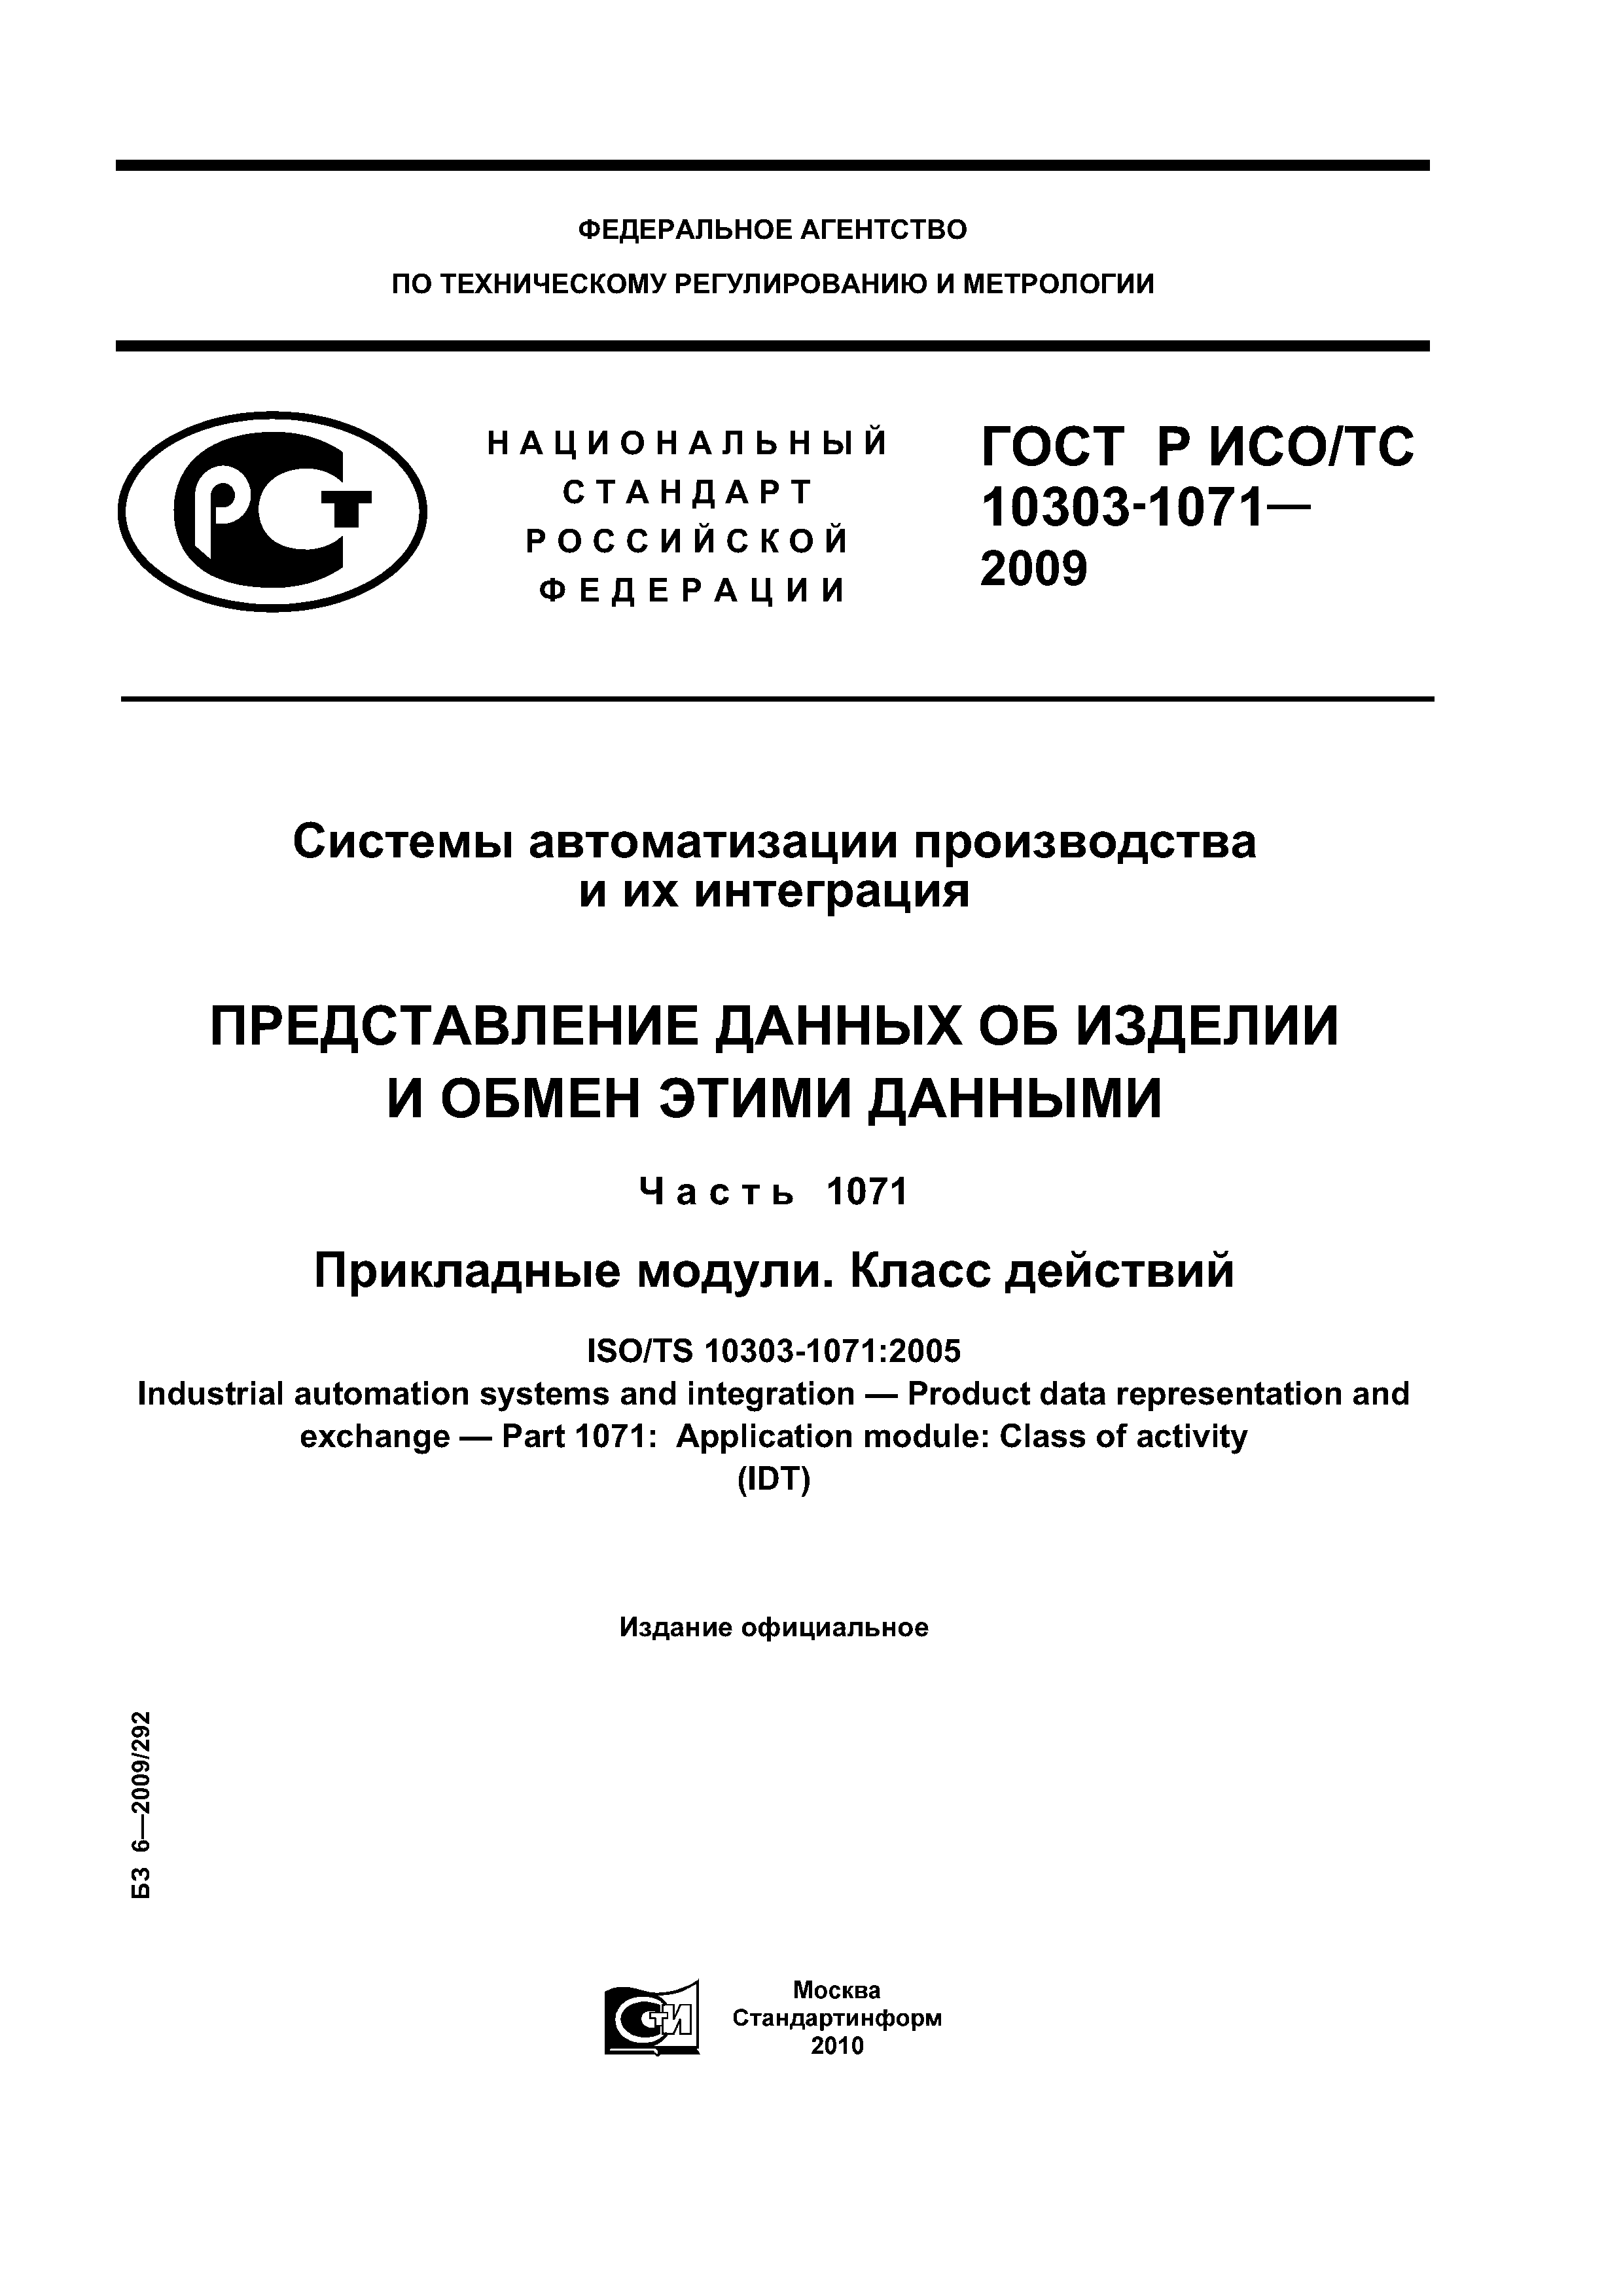 ГОСТ Р ИСО/ТС 10303-1071-2009